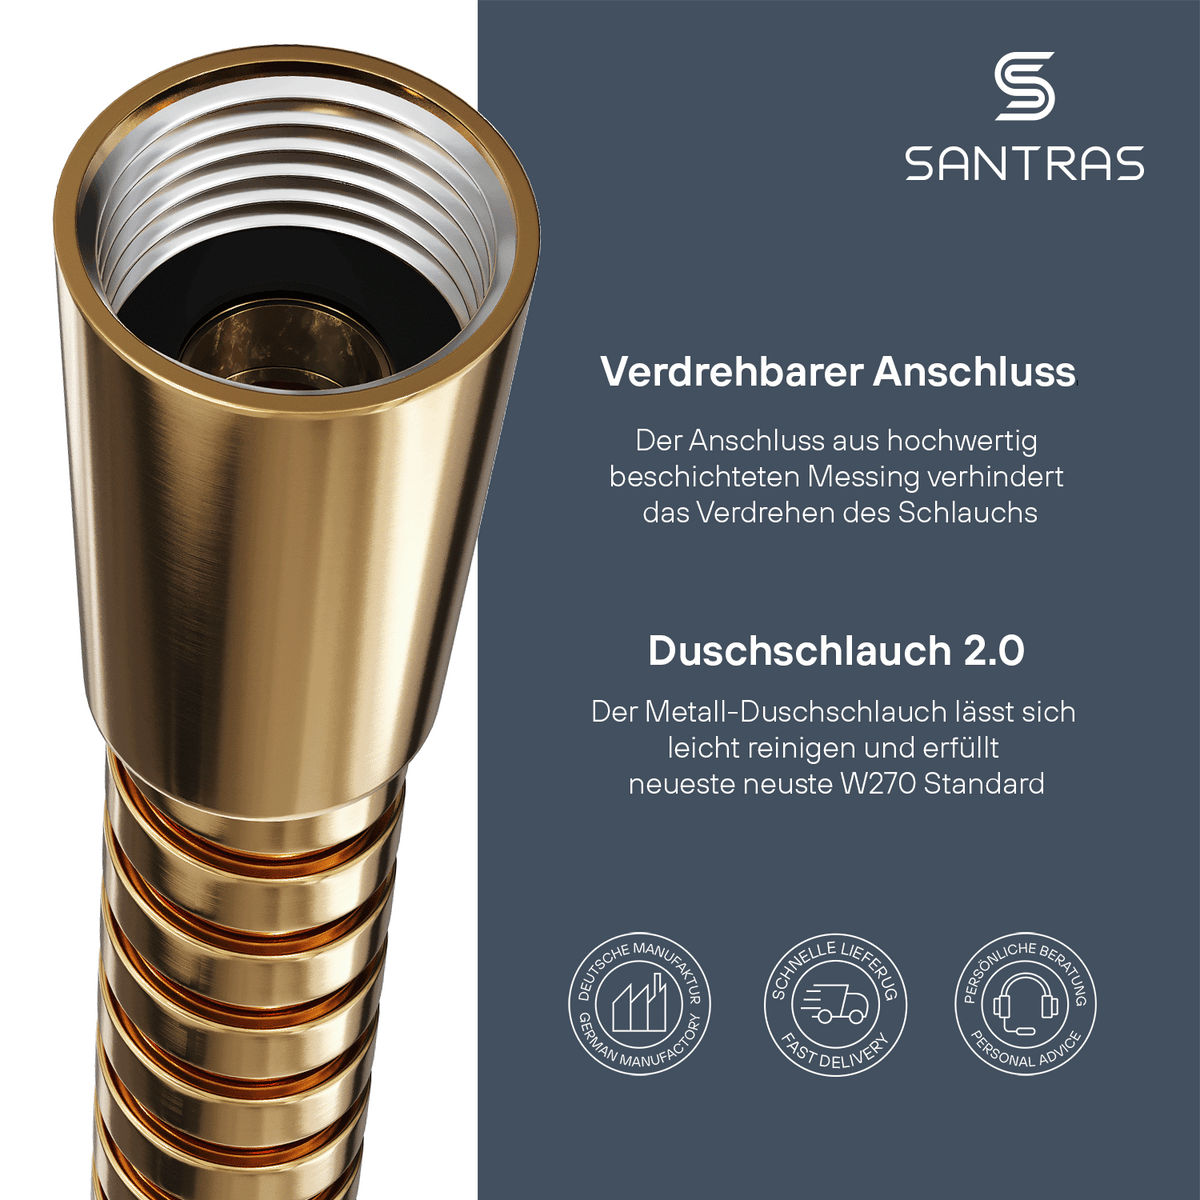 SANTRAS® Metallschlauch in Gold (24 Karat)